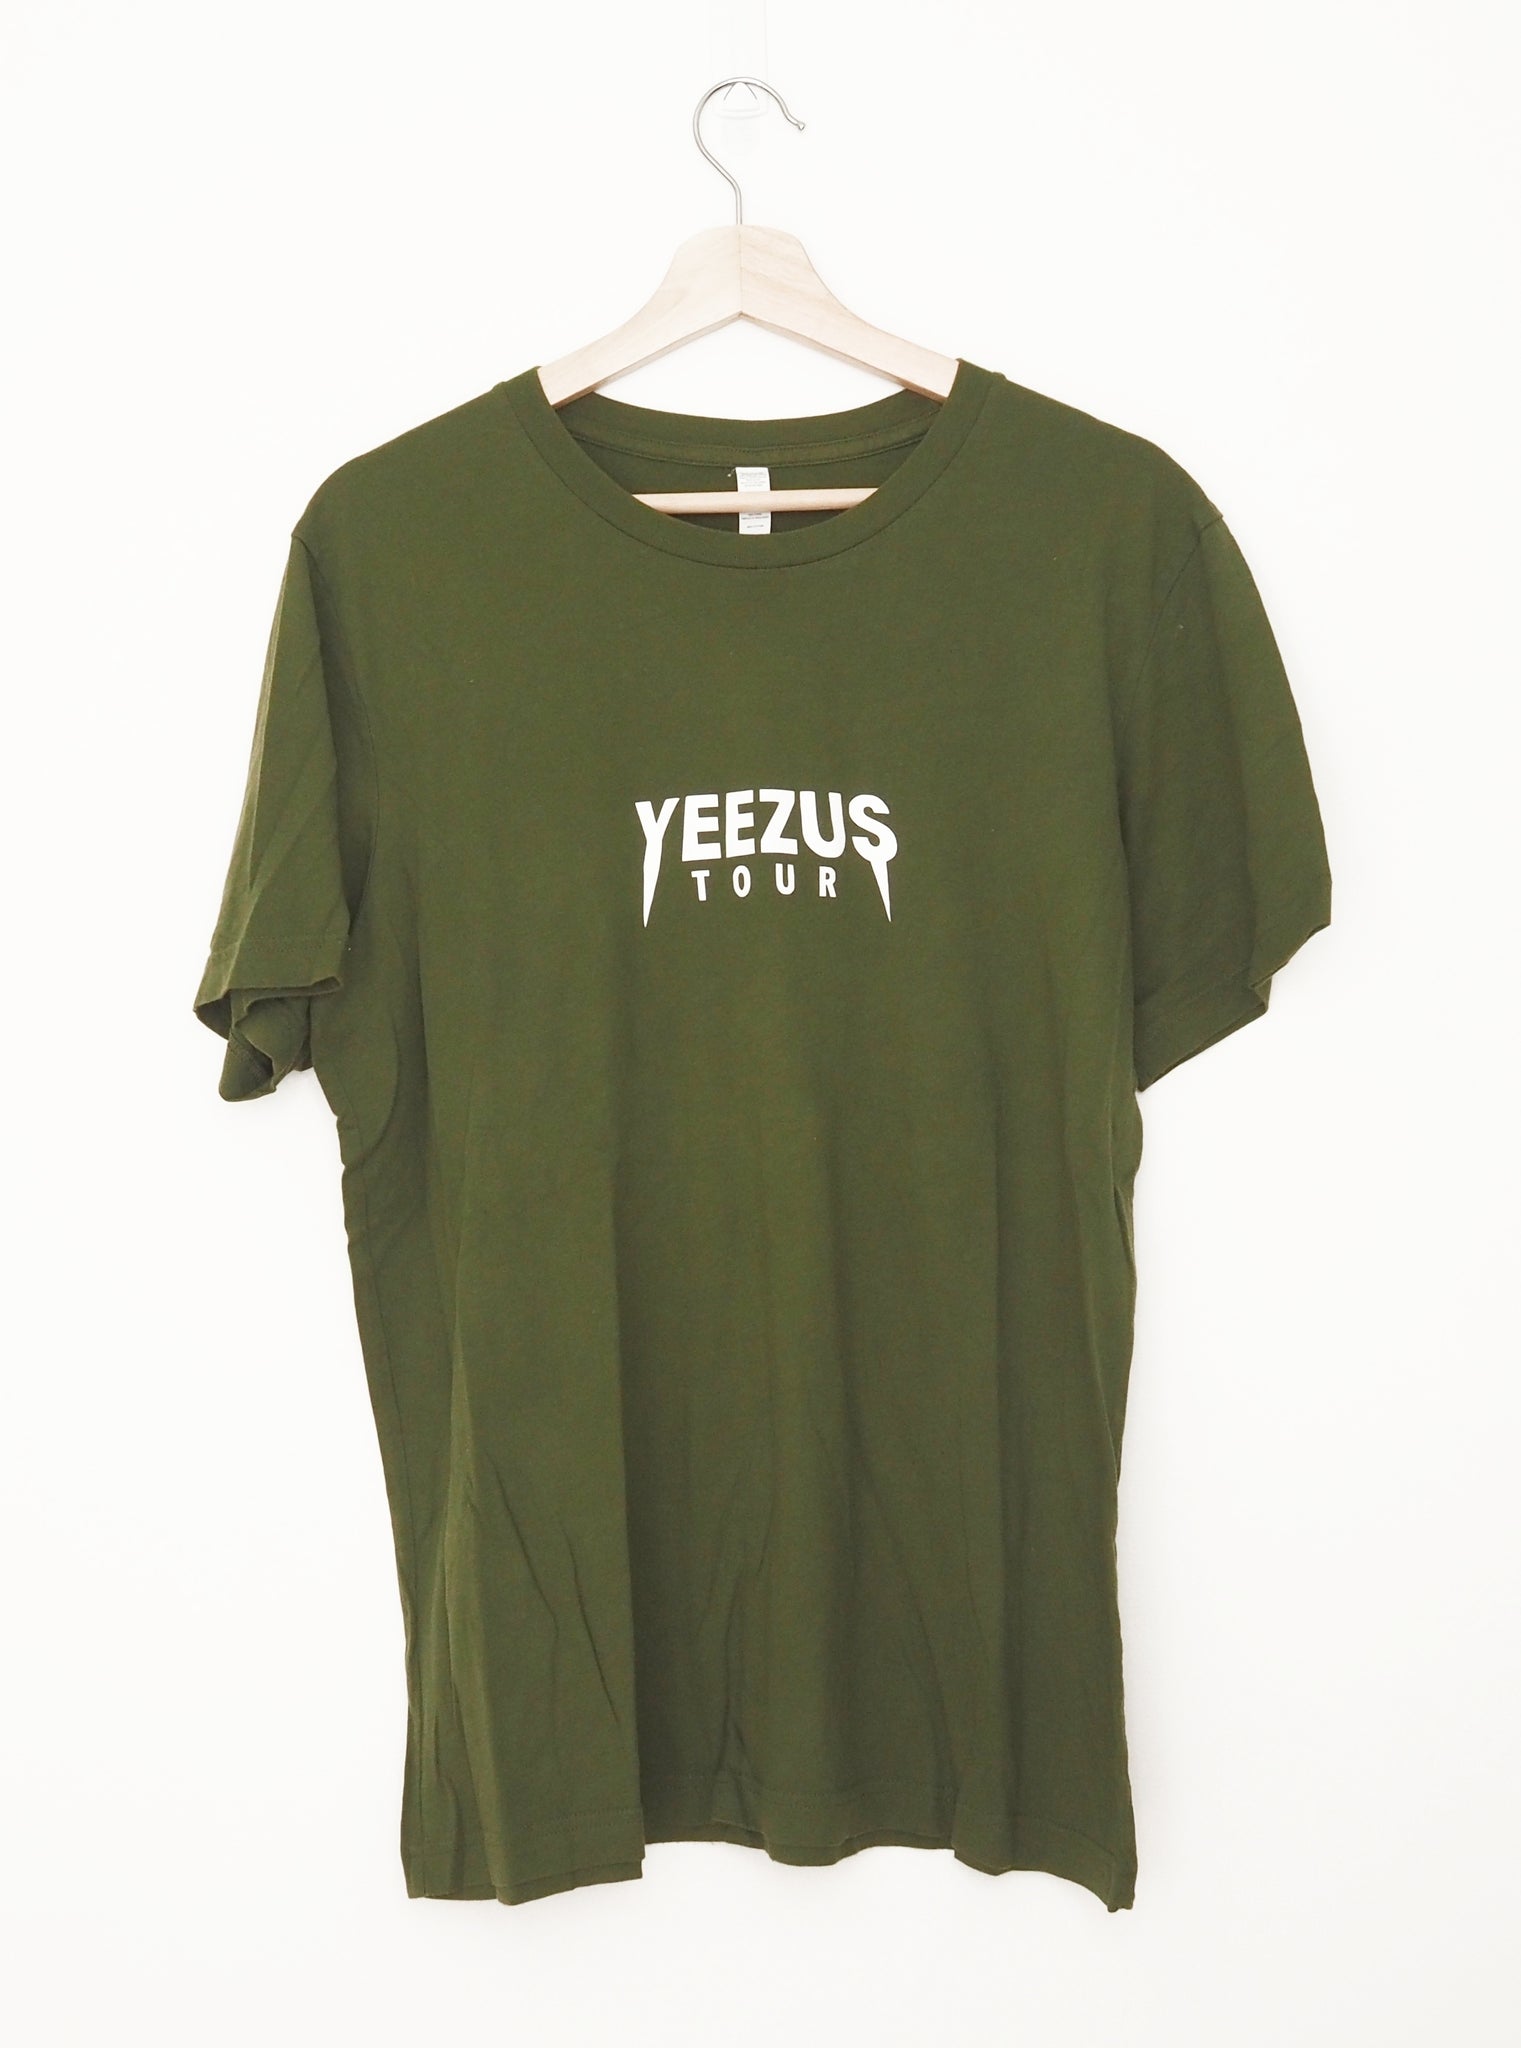 The Yeezus Tour T-shirt